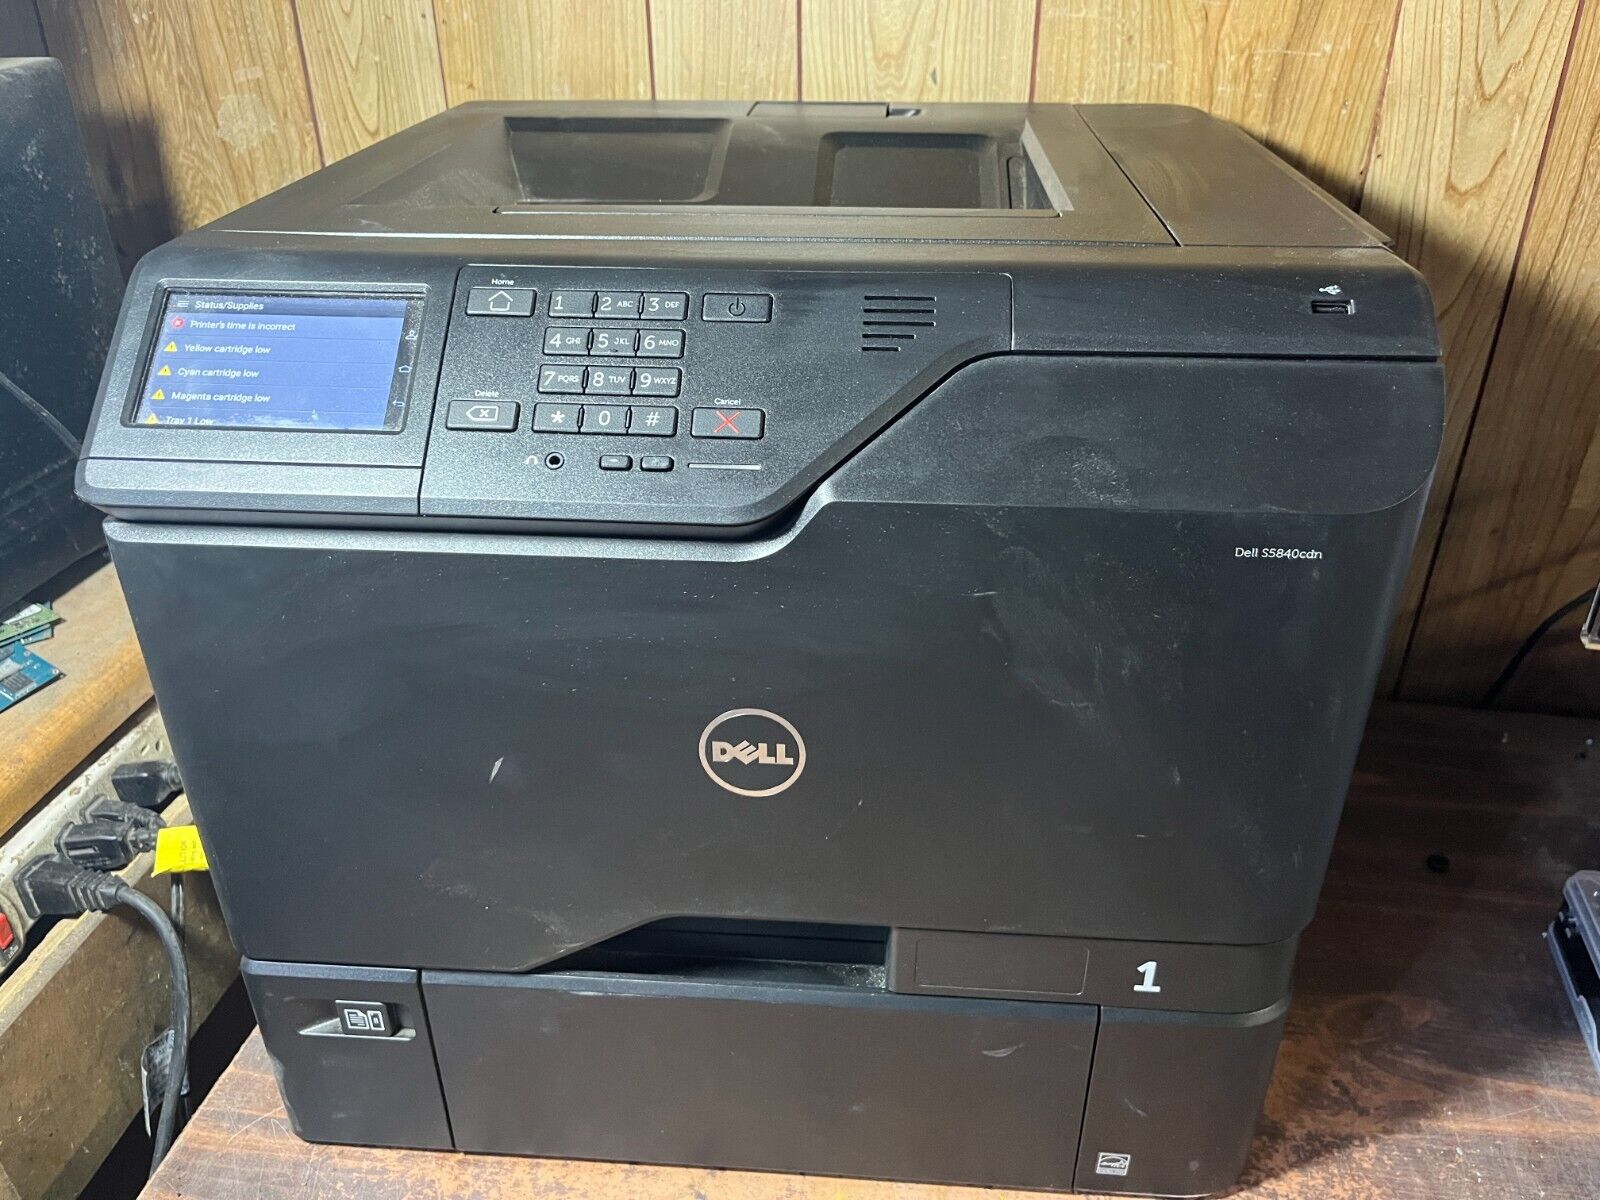 Dell S5840cdn 50PPM Color Printer